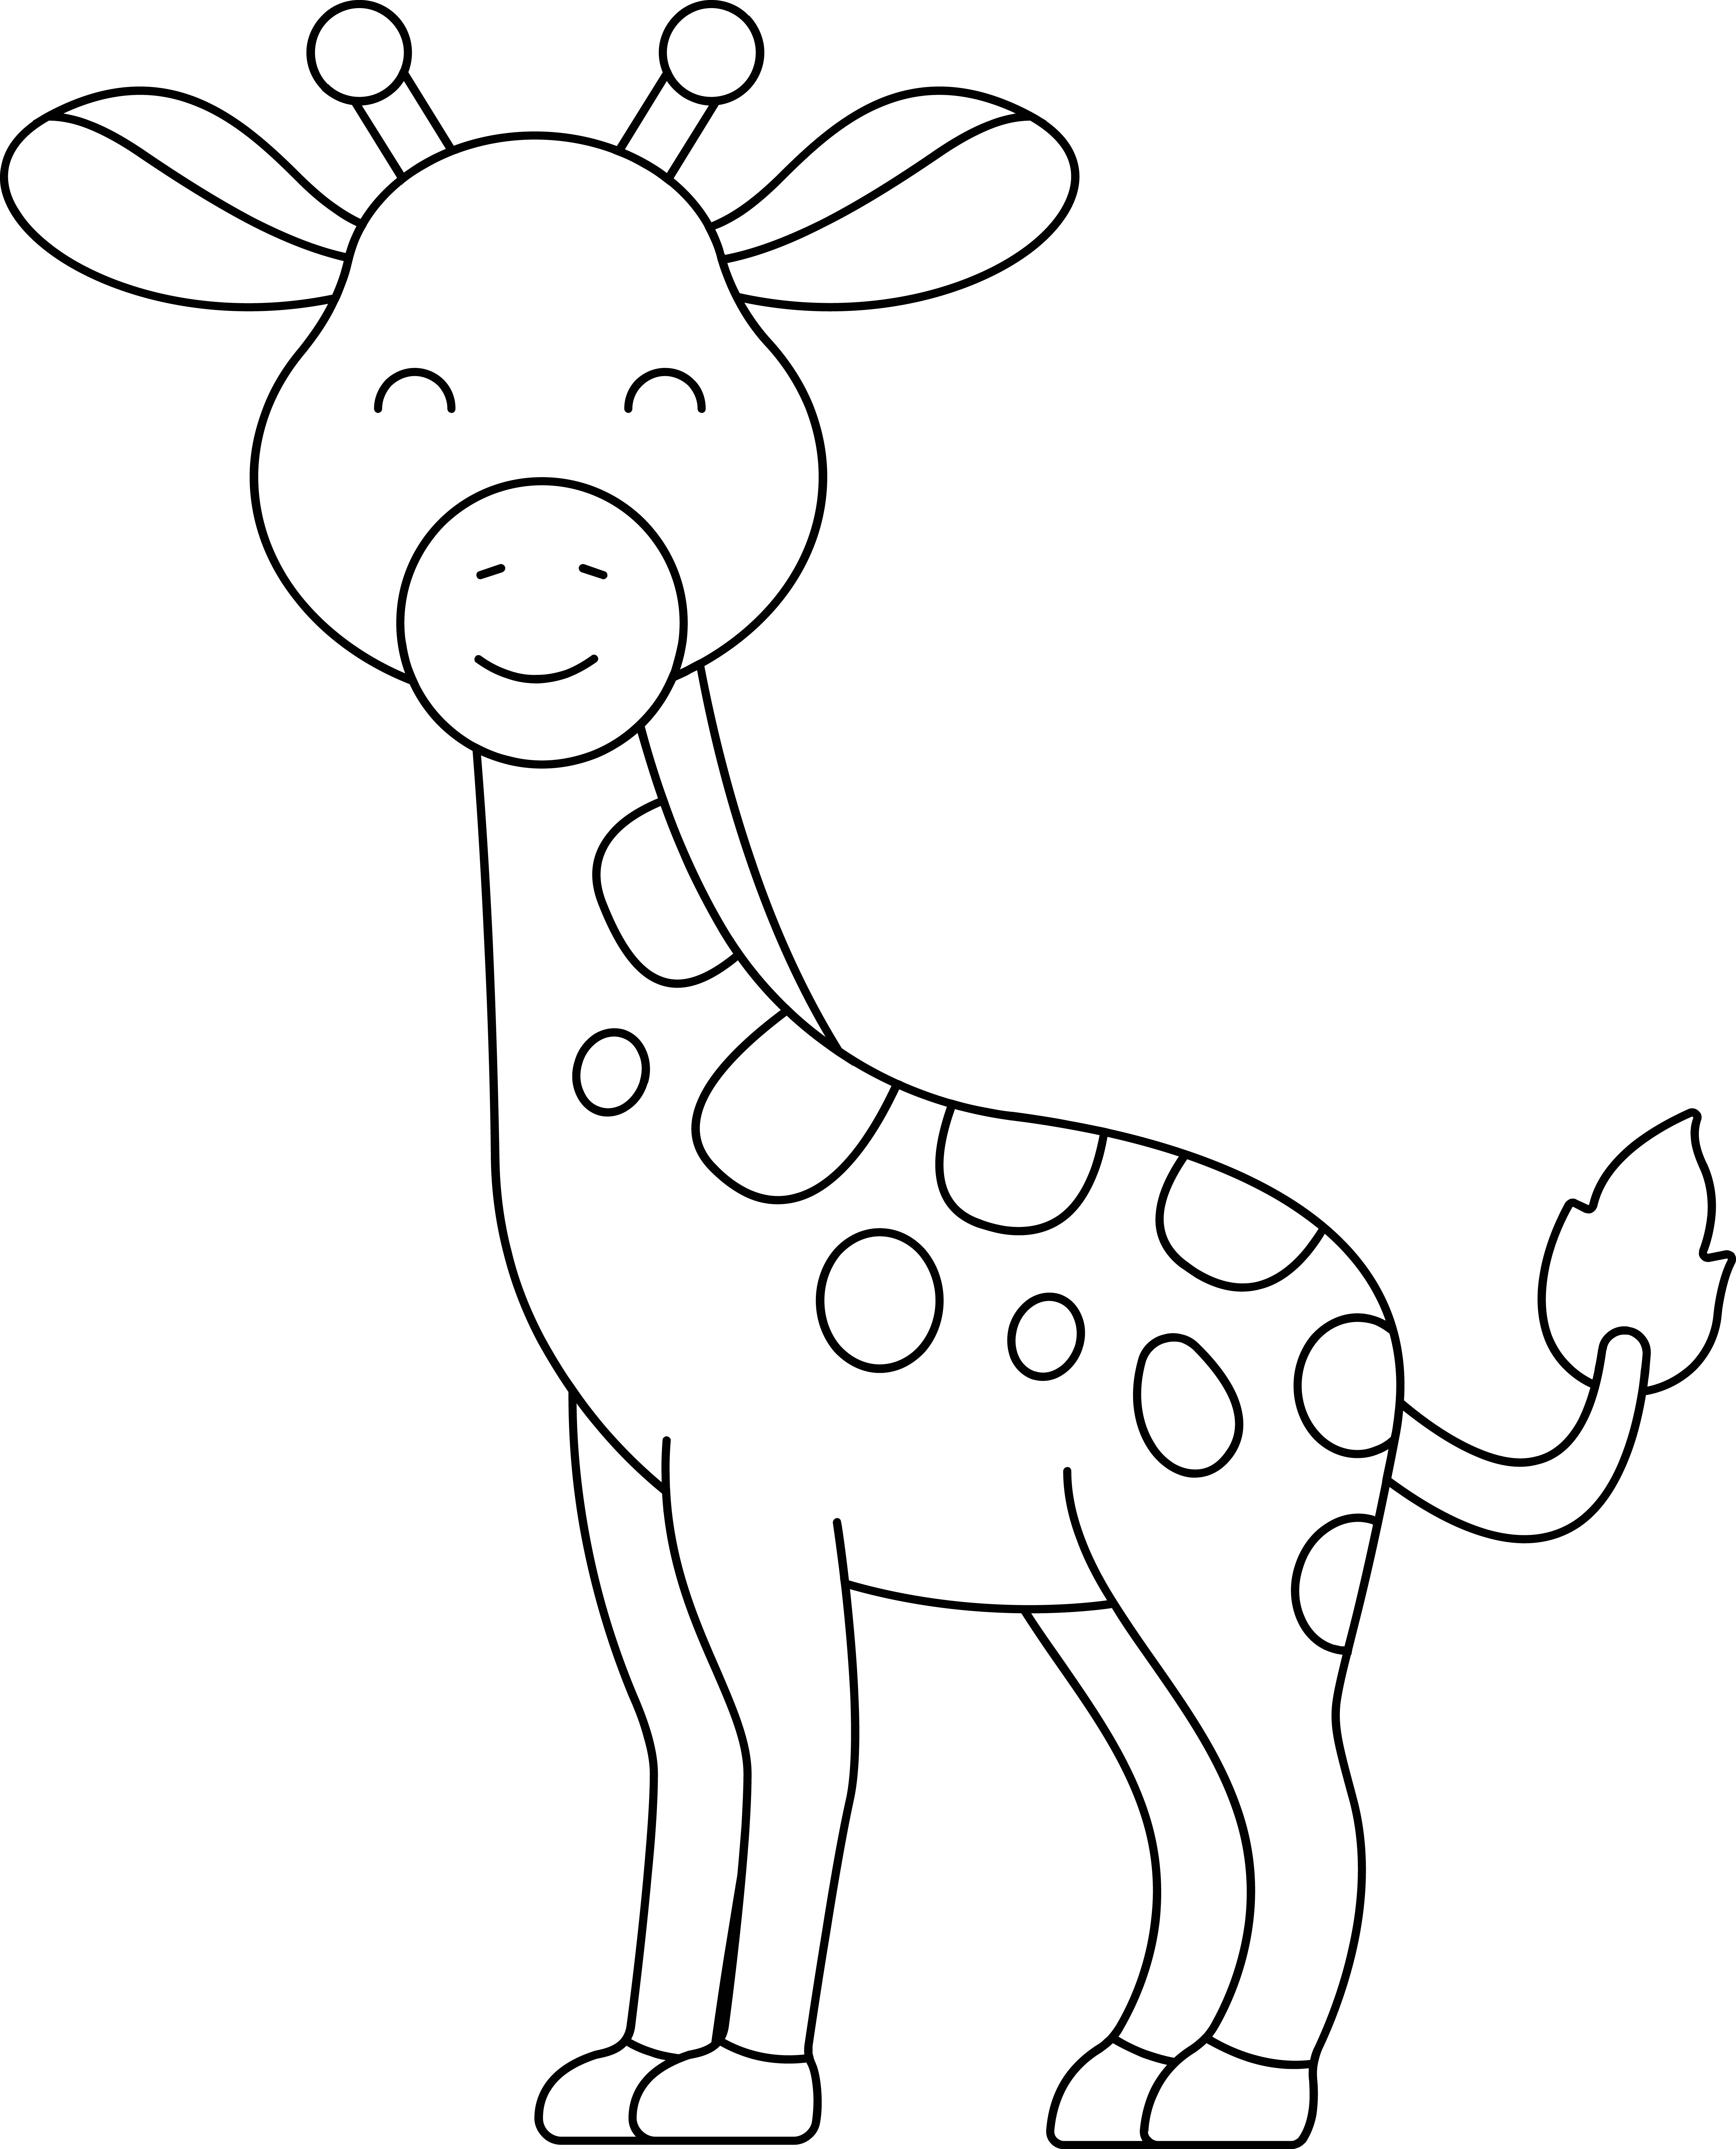 Раскраска маленький жираф с закрытыми глазами формата А4 в высоком качестве